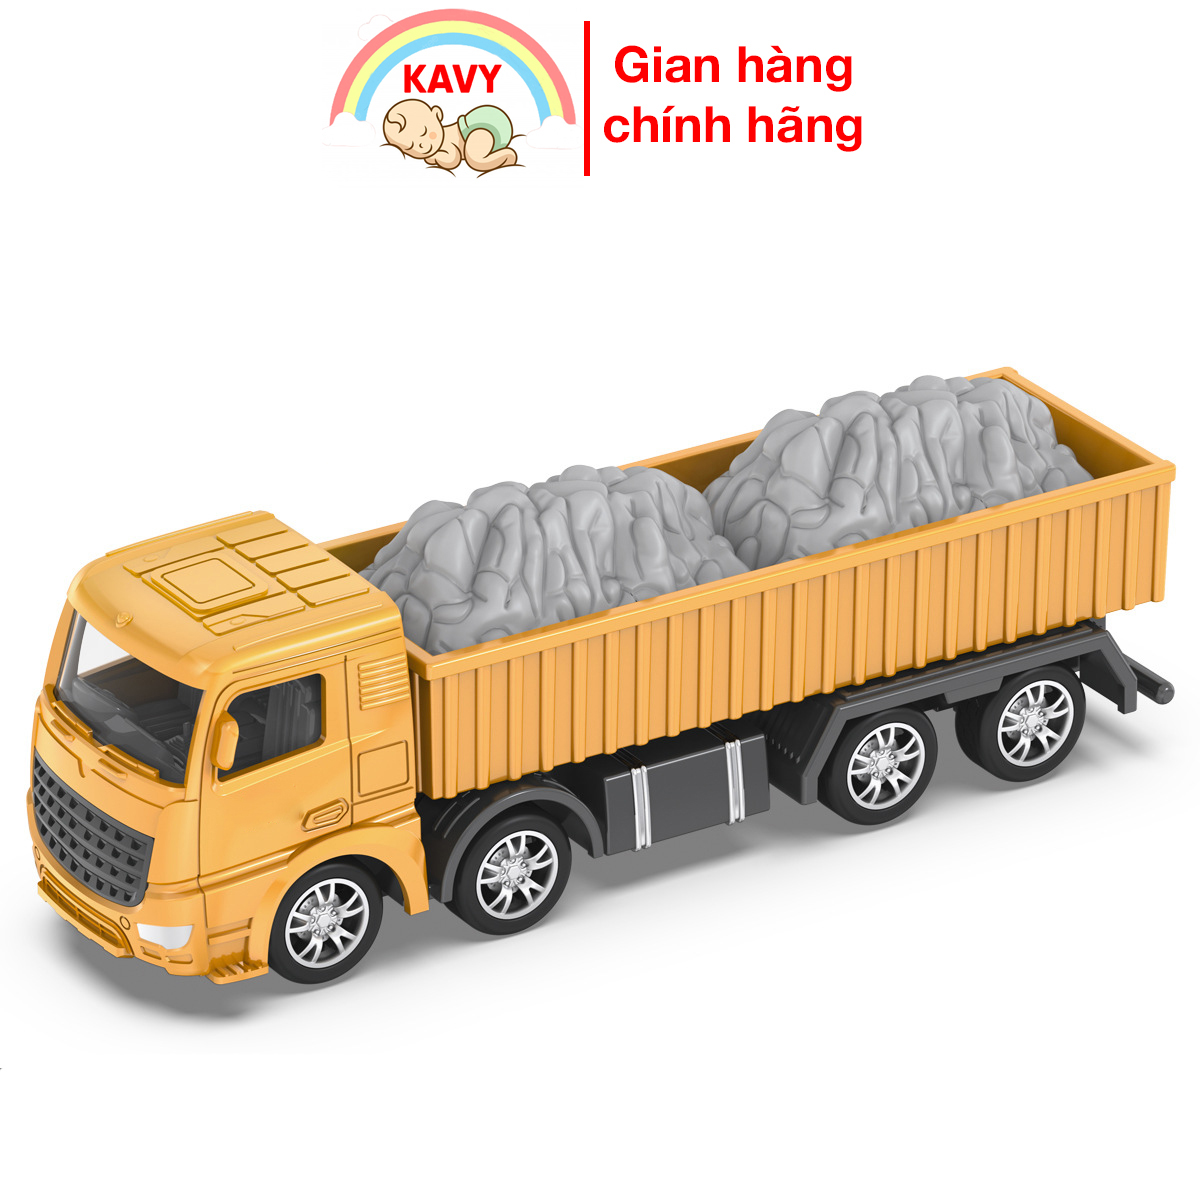 Giảm giá Xe mô hình đồ chơi trẻ em xe tải chở đồ KAVY hơp kim sắt và nhựa  nguyên sinh an toàn, chi tiết sắc sảo bền, đẹp, có thể trưng